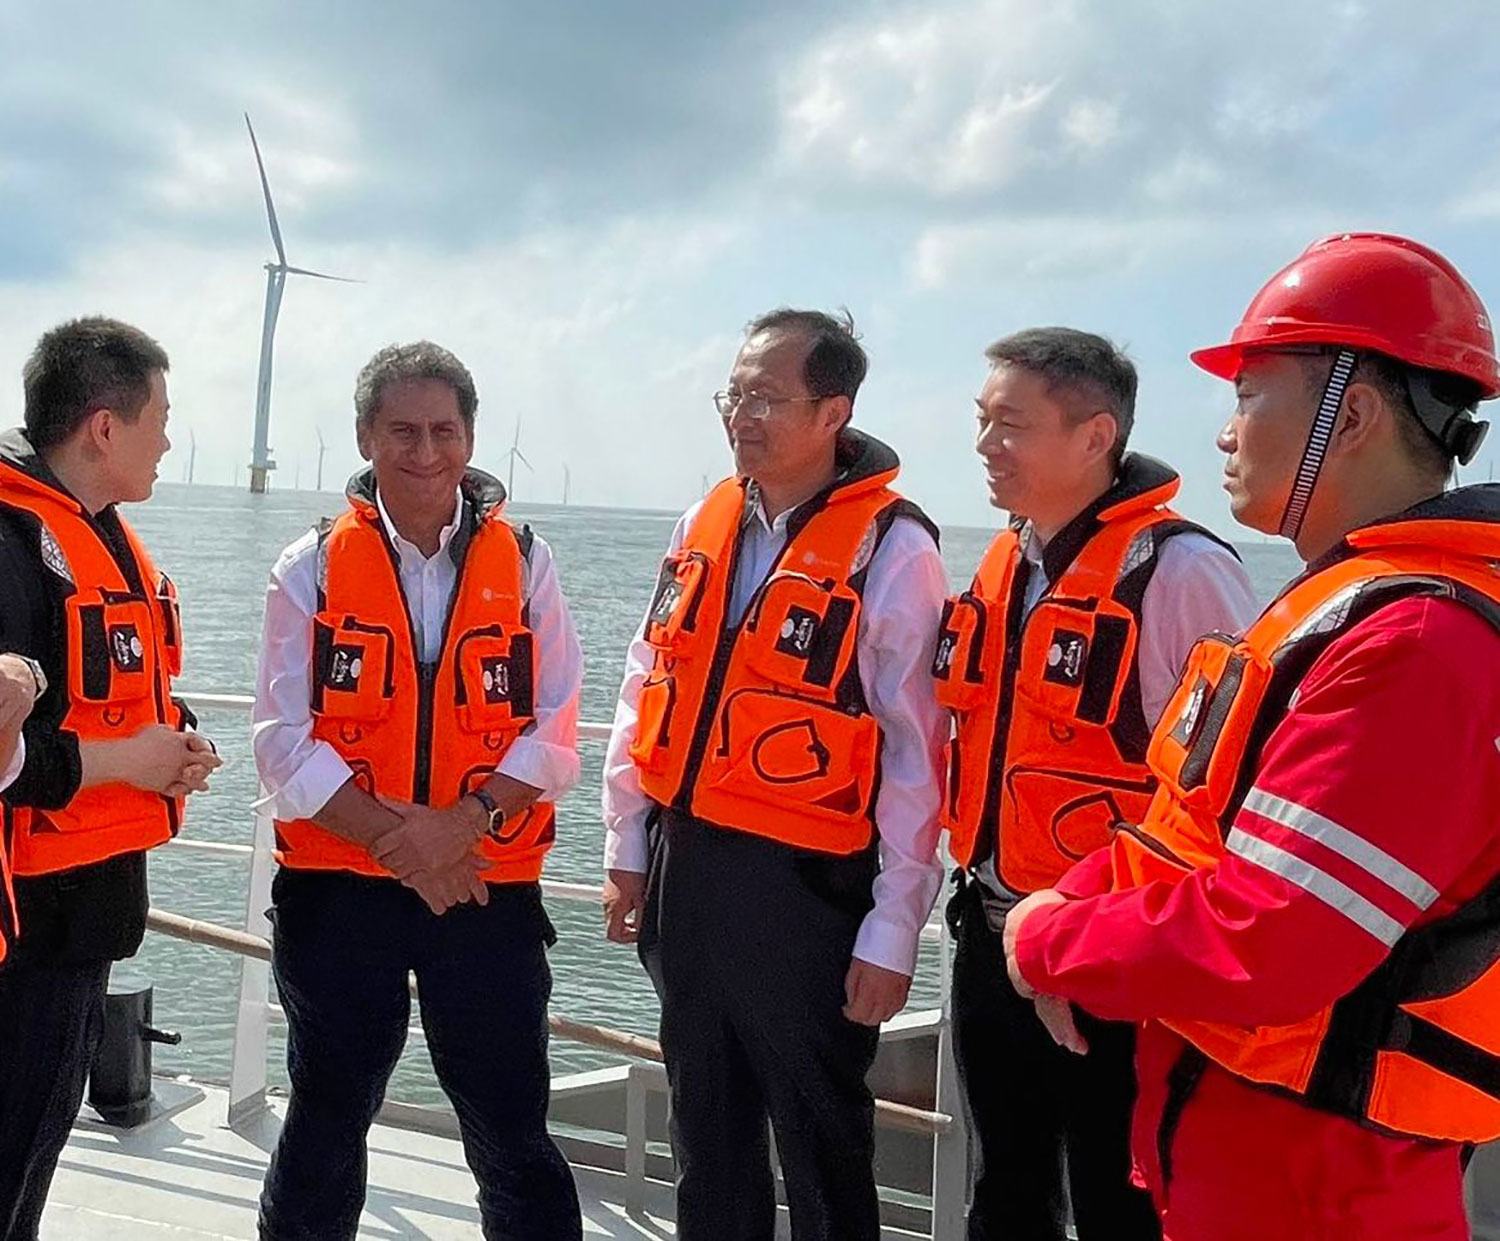 قابل تجدید توانائی کے لیے بین الاقوامی ادارے ’آئرینا‘ کے ڈائریکٹر جنرل فرانسسکو لا کیمیرا (بائیں جانب سے دوسرے) چین کے علاقے ین چانگ میں ہوا سے چلنے والی ٹربائن کے منصوبے کا جائزہ لیتے ہوئے۔